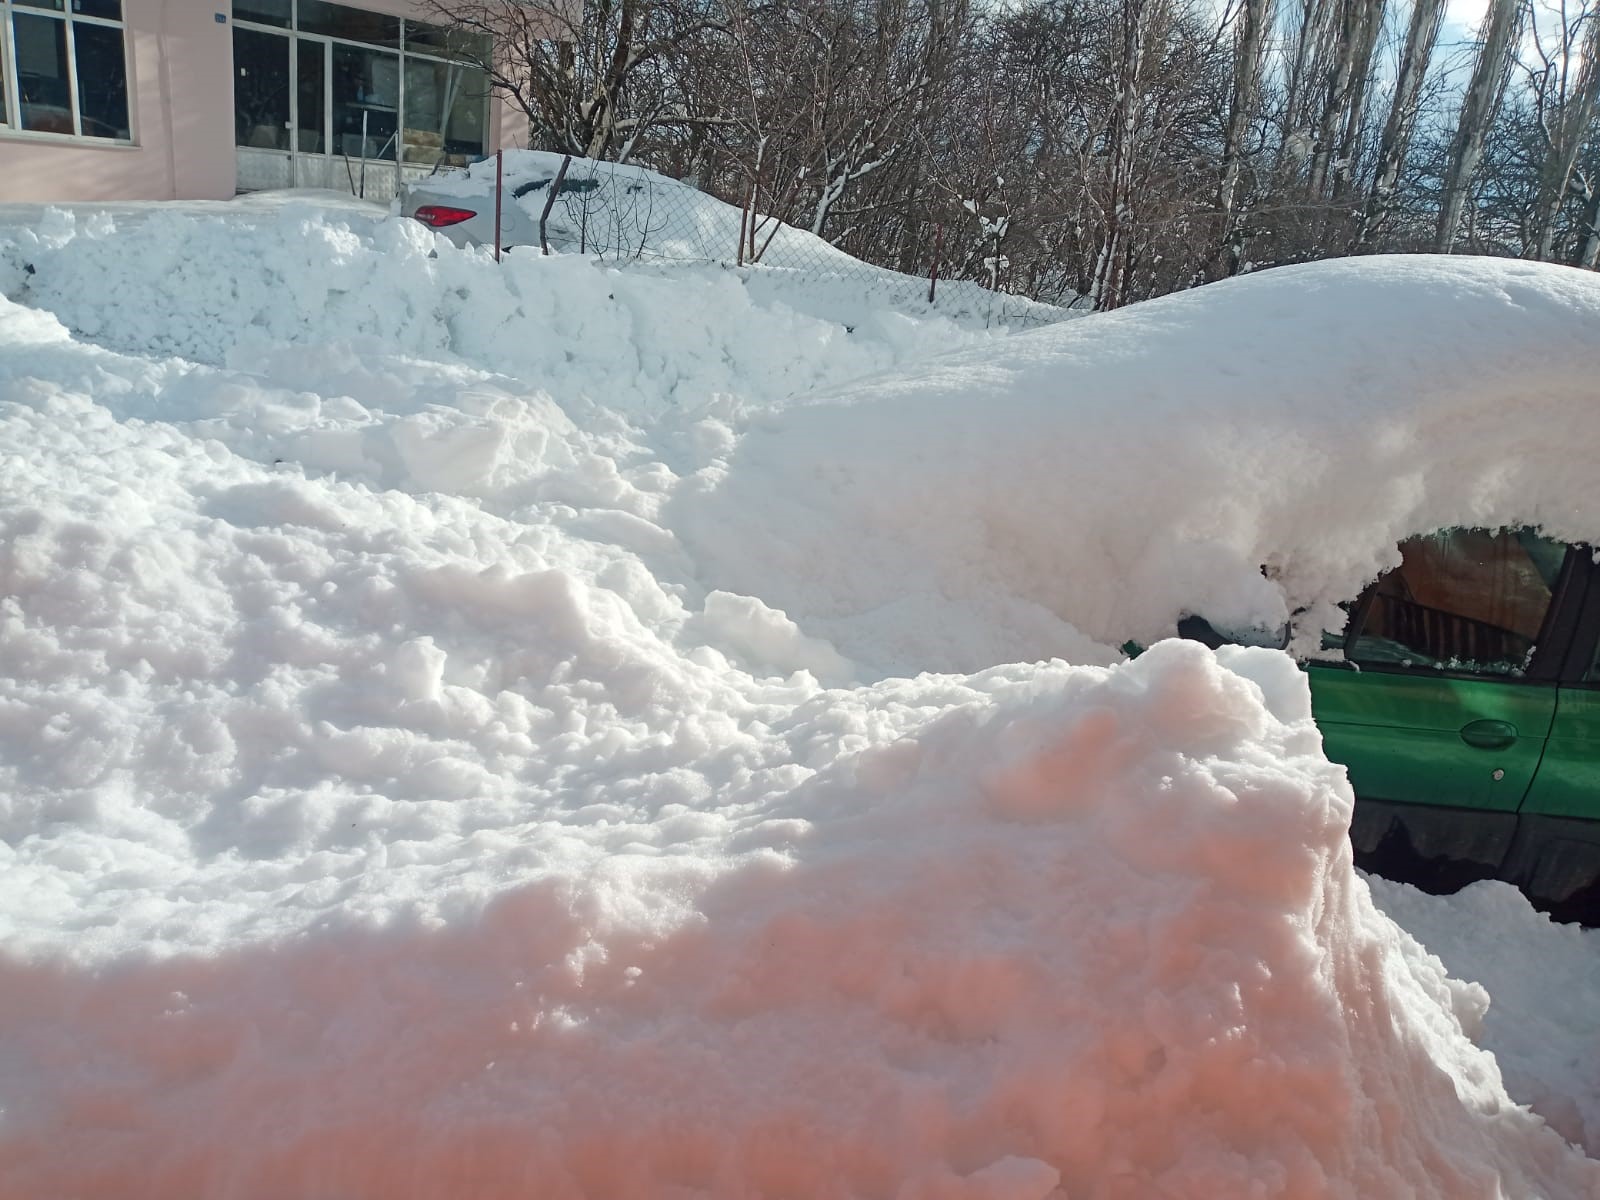 Ardahan'da karla mücadele devam ediyor